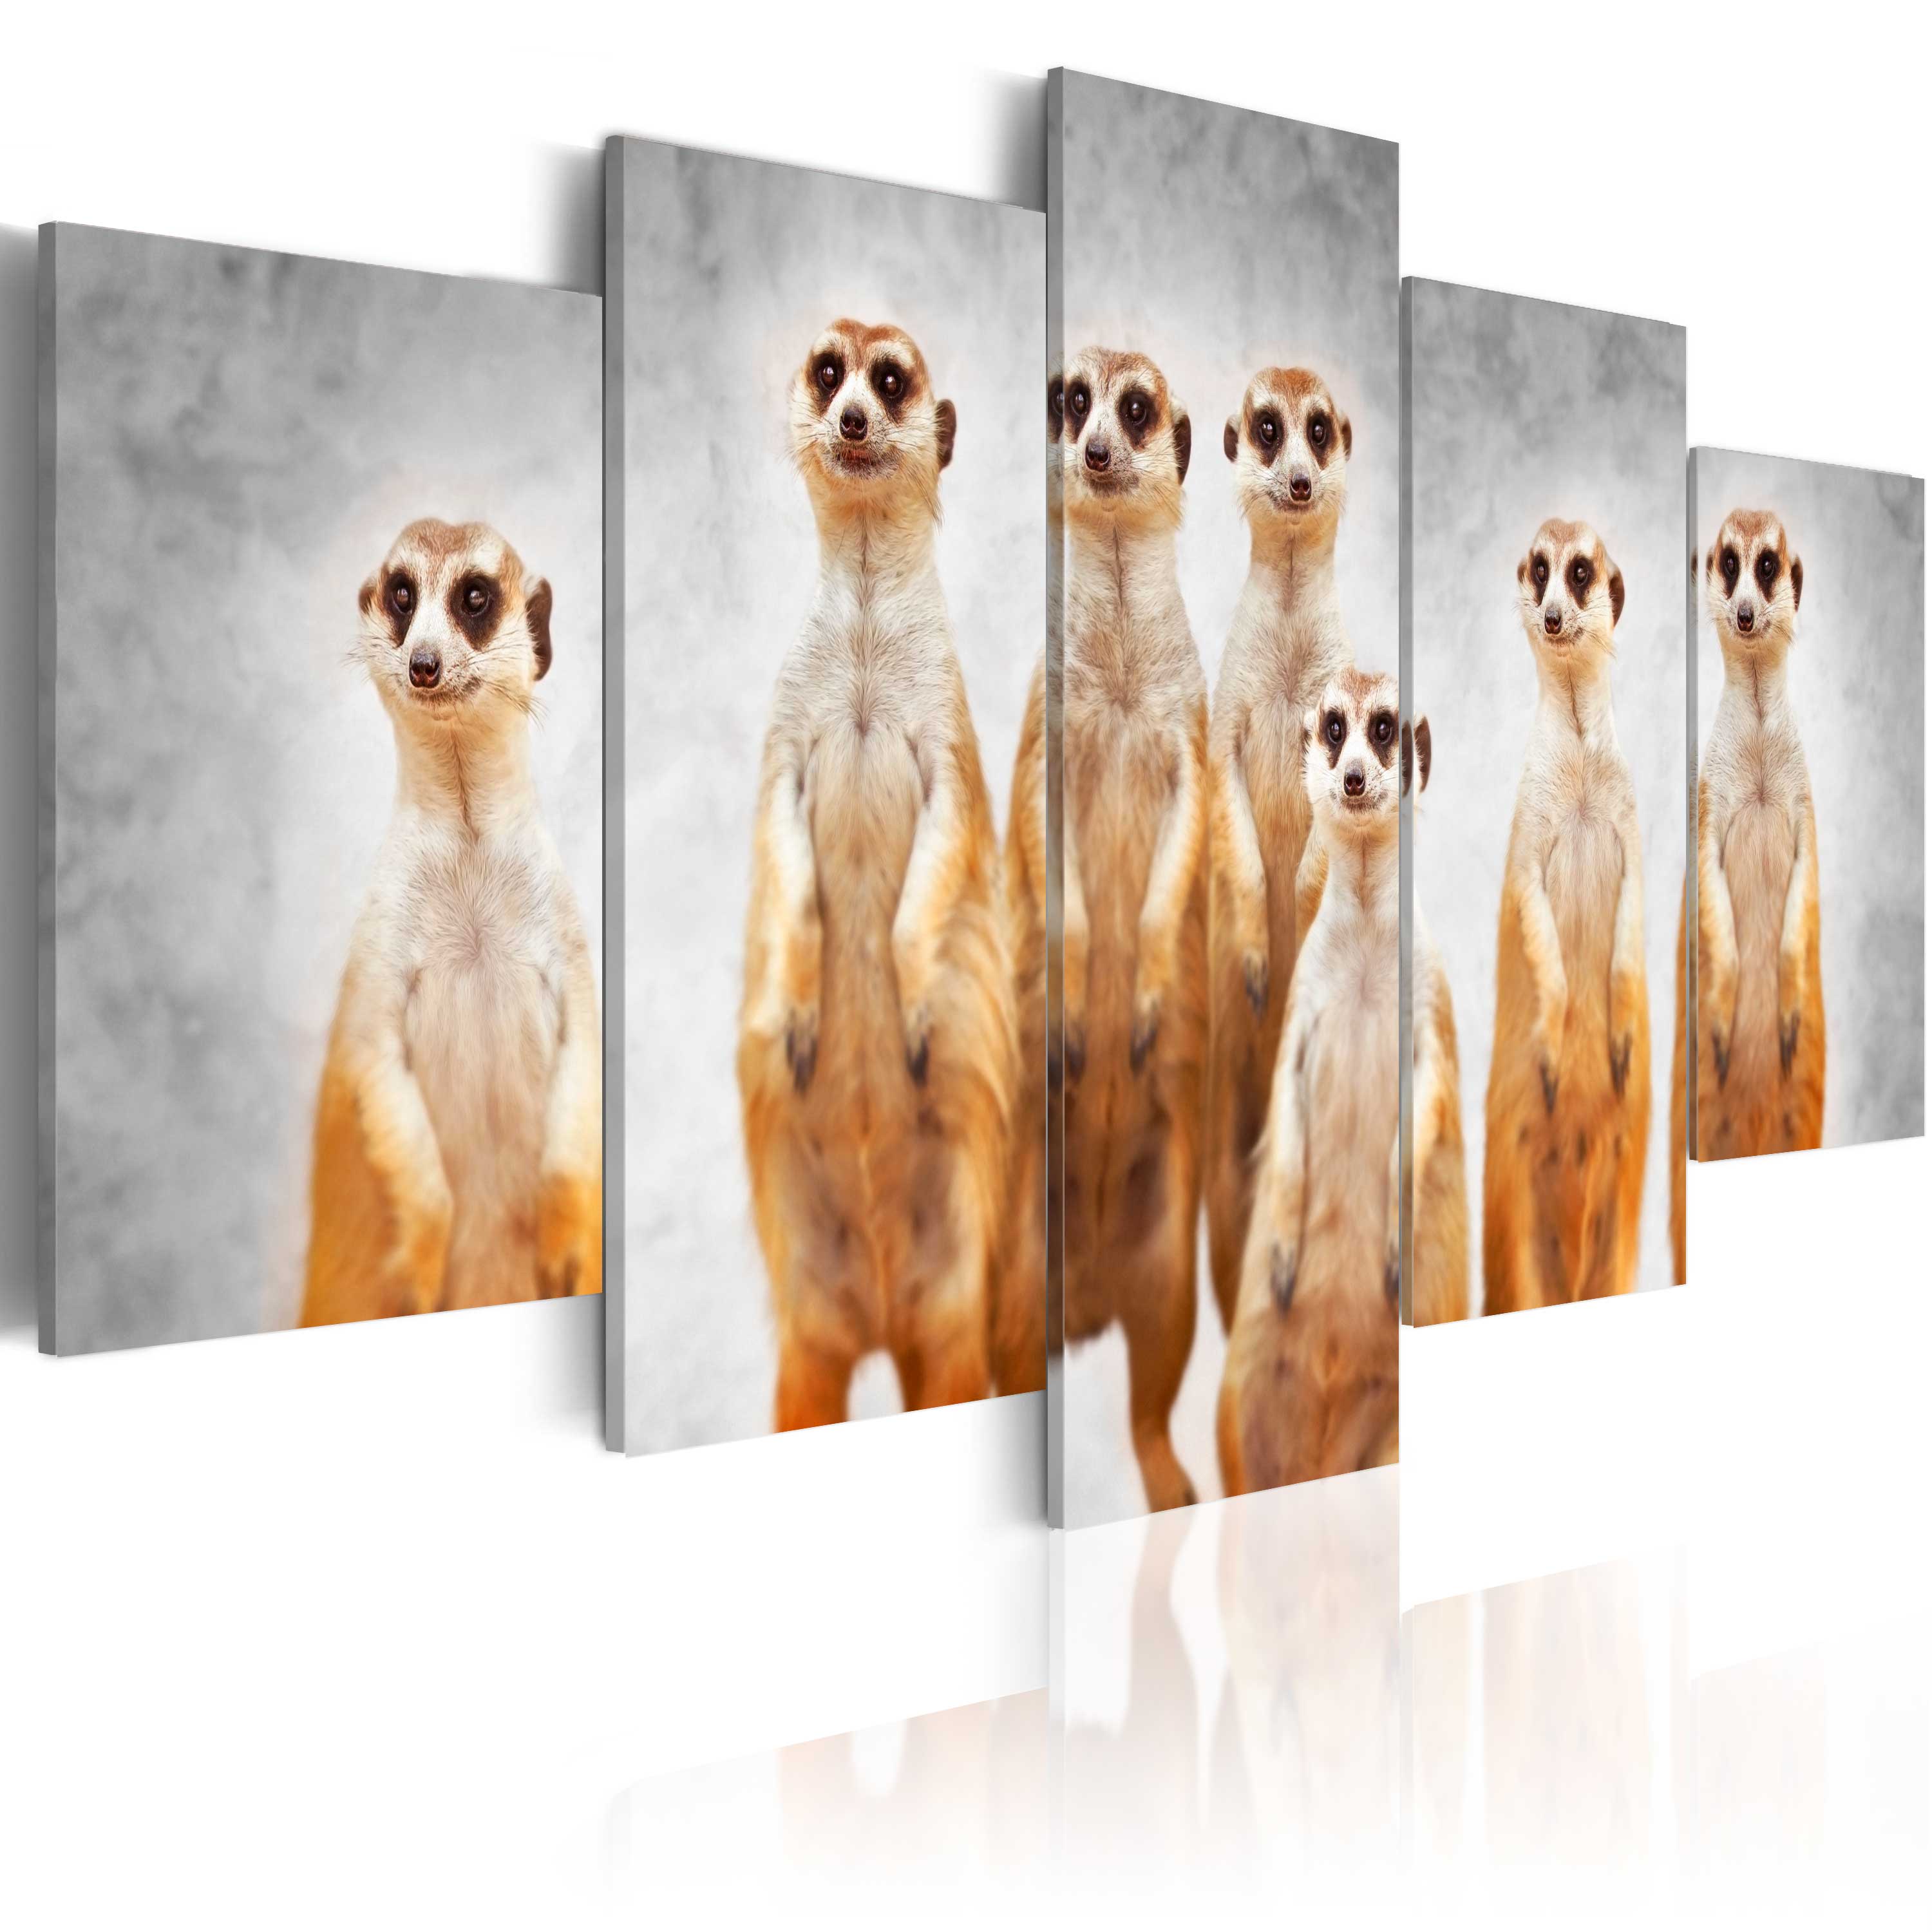 ARTGEIST billede trykt på lærred - Meerkats, 5-delt - Flere størrelser 100x50